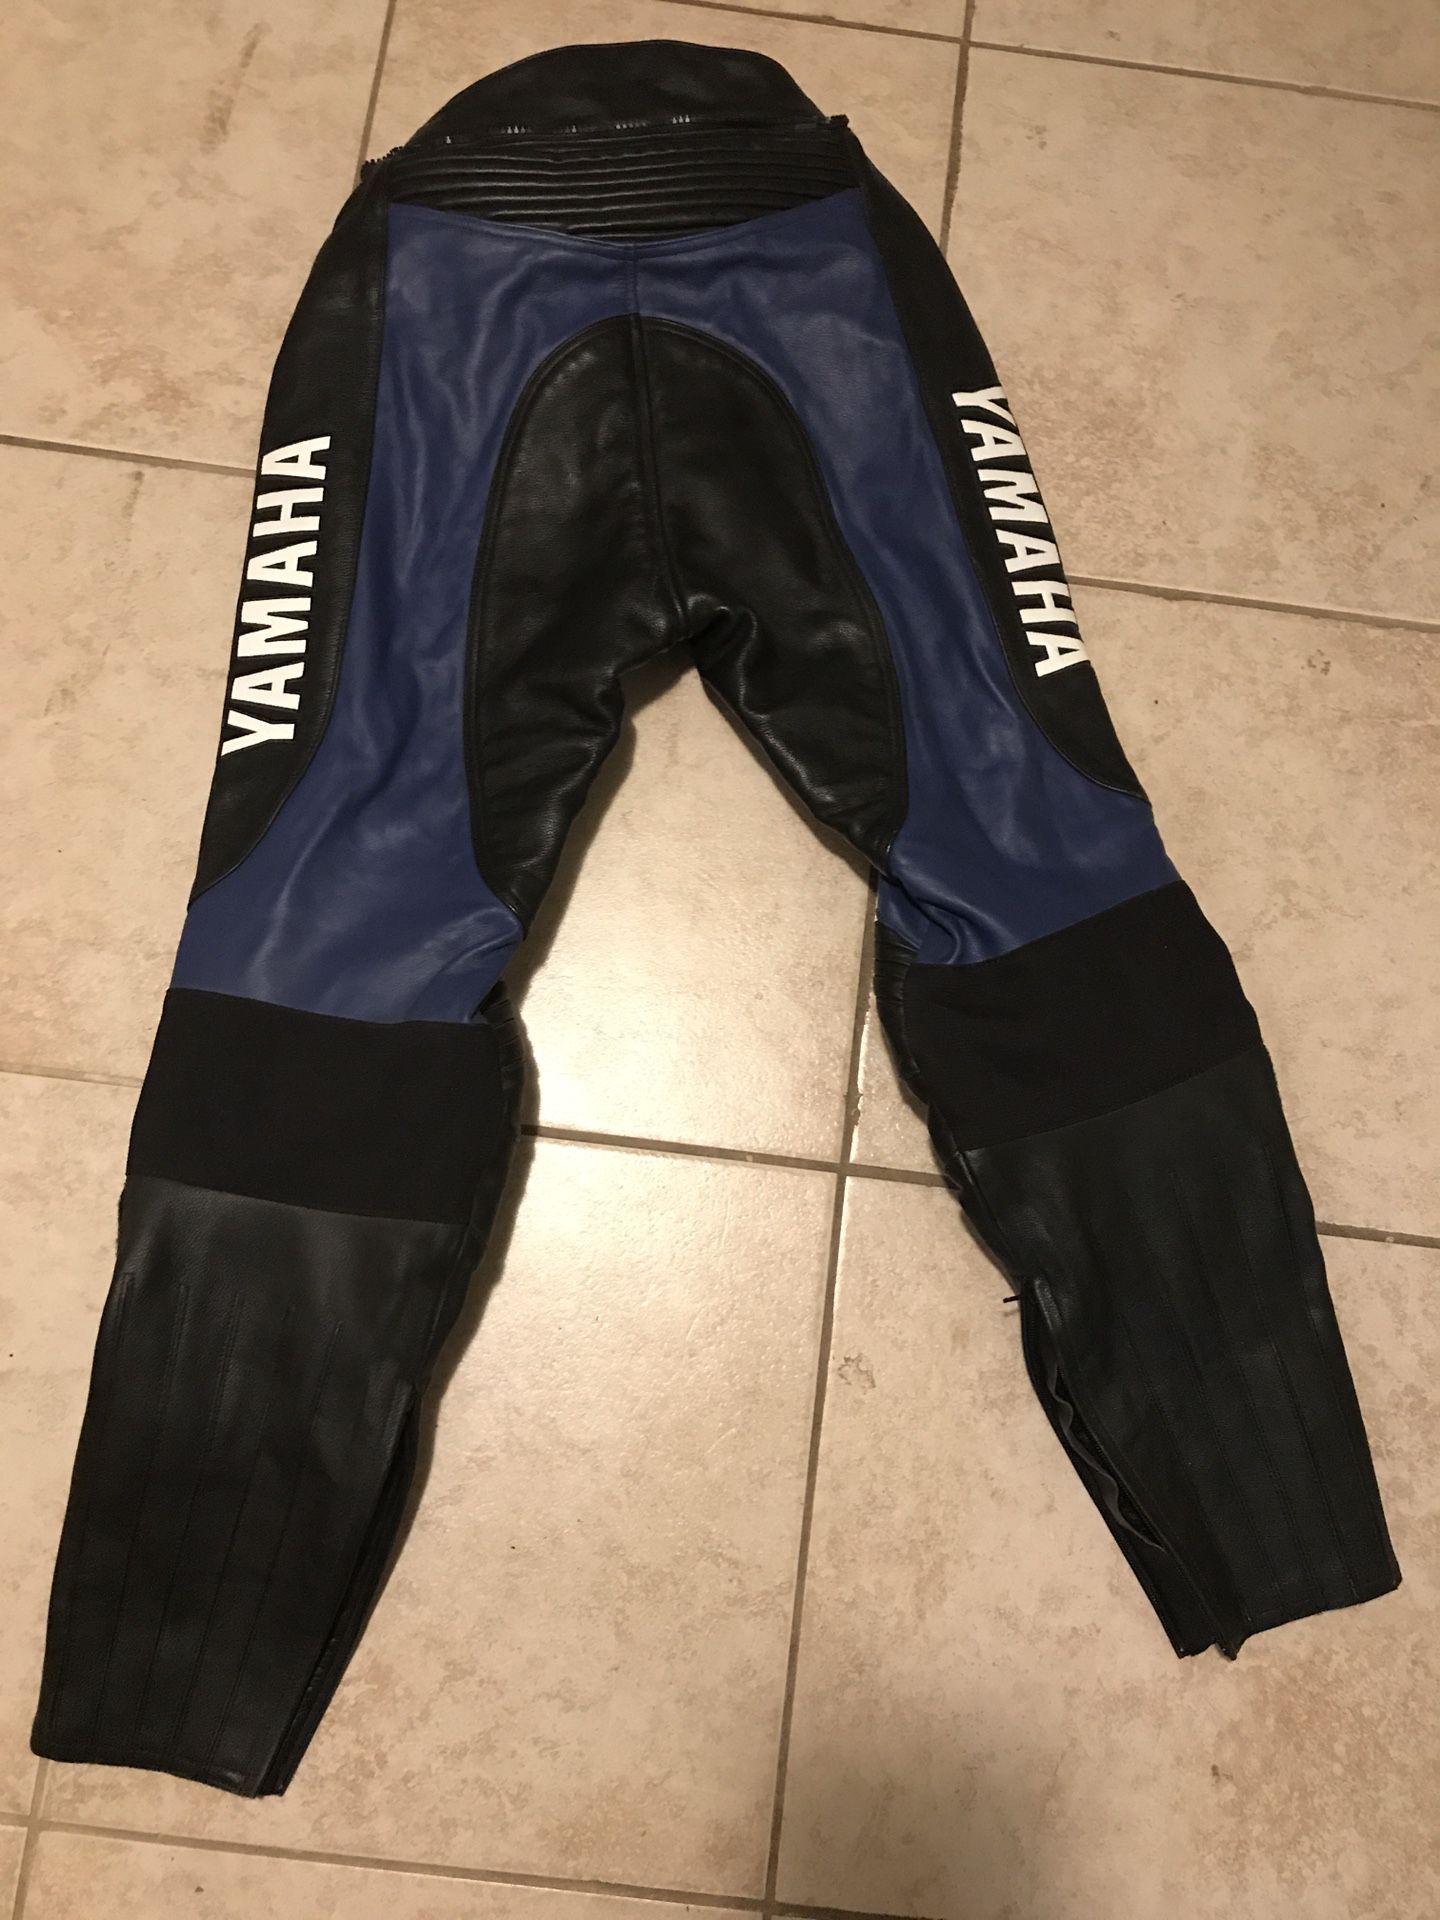 Yamaha leather motorcycle pants